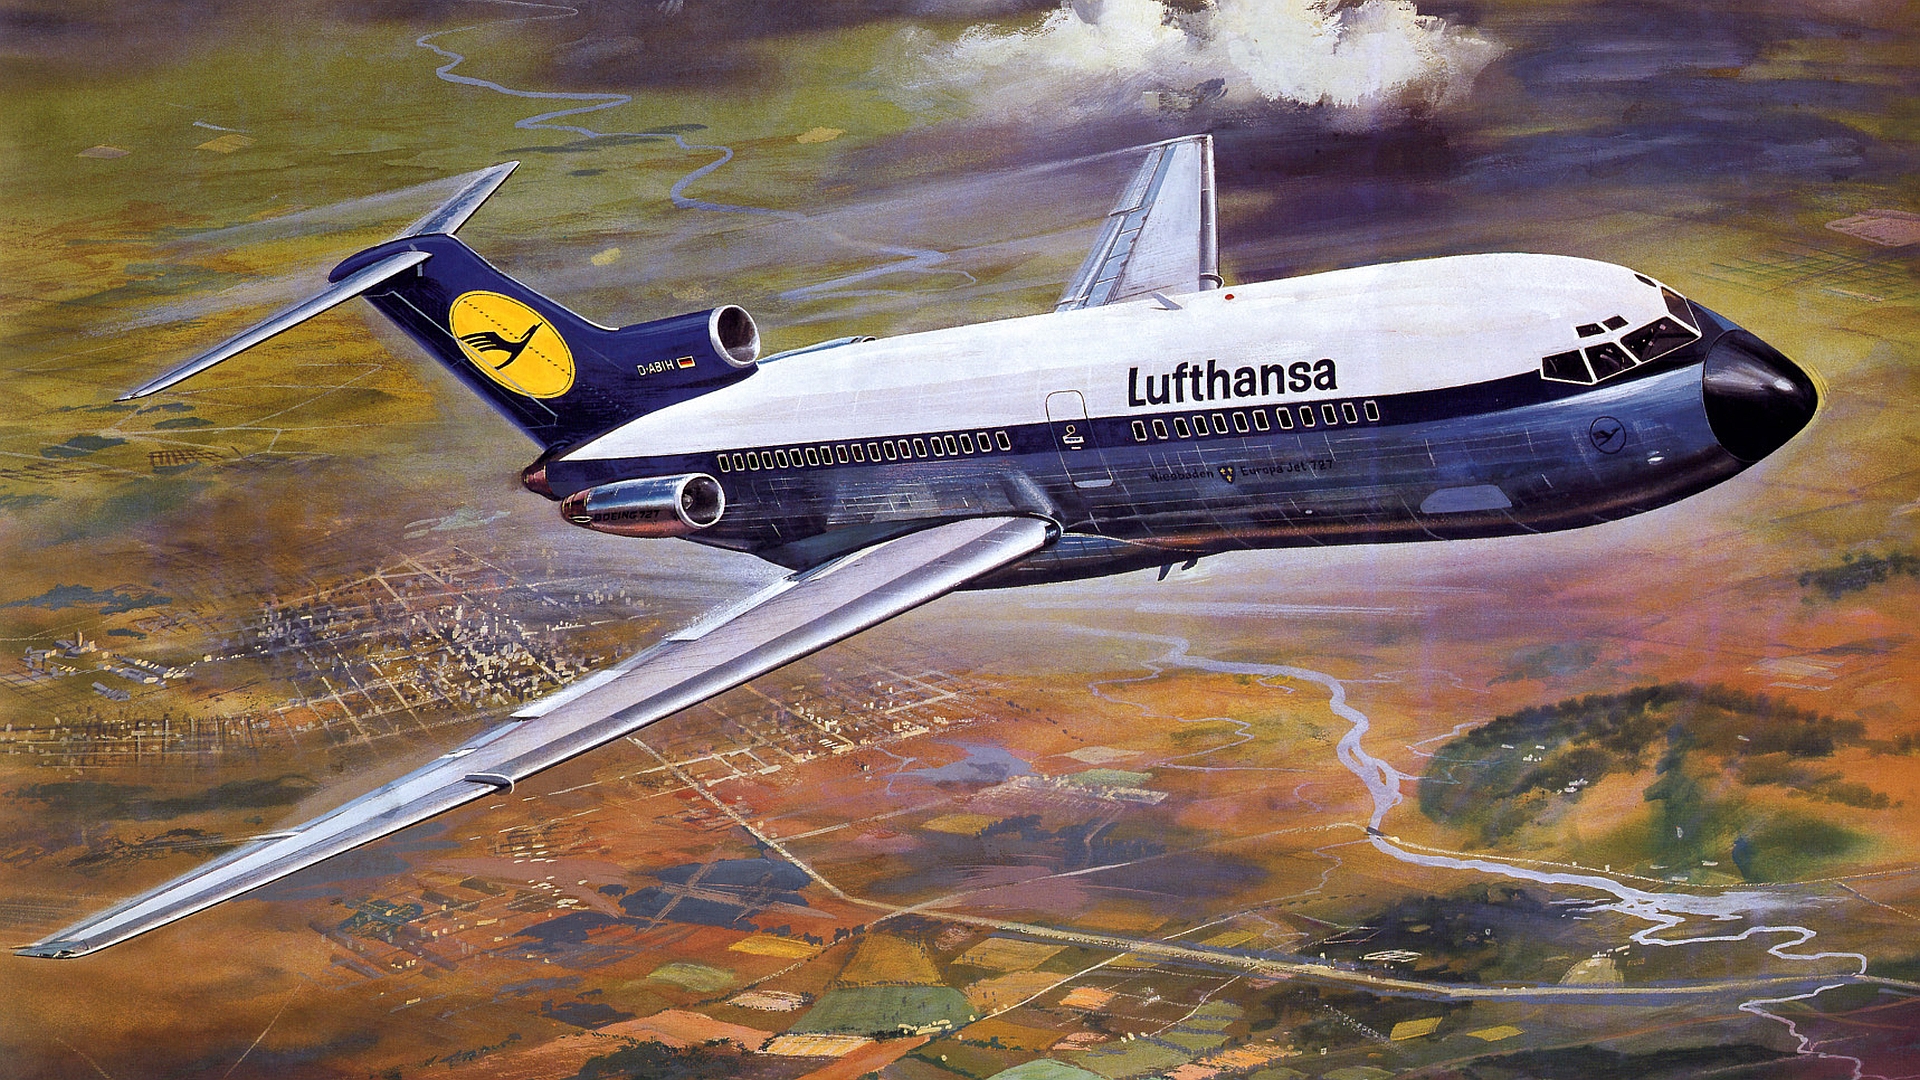 Télécharger des fonds d'écran Lufthansa HD